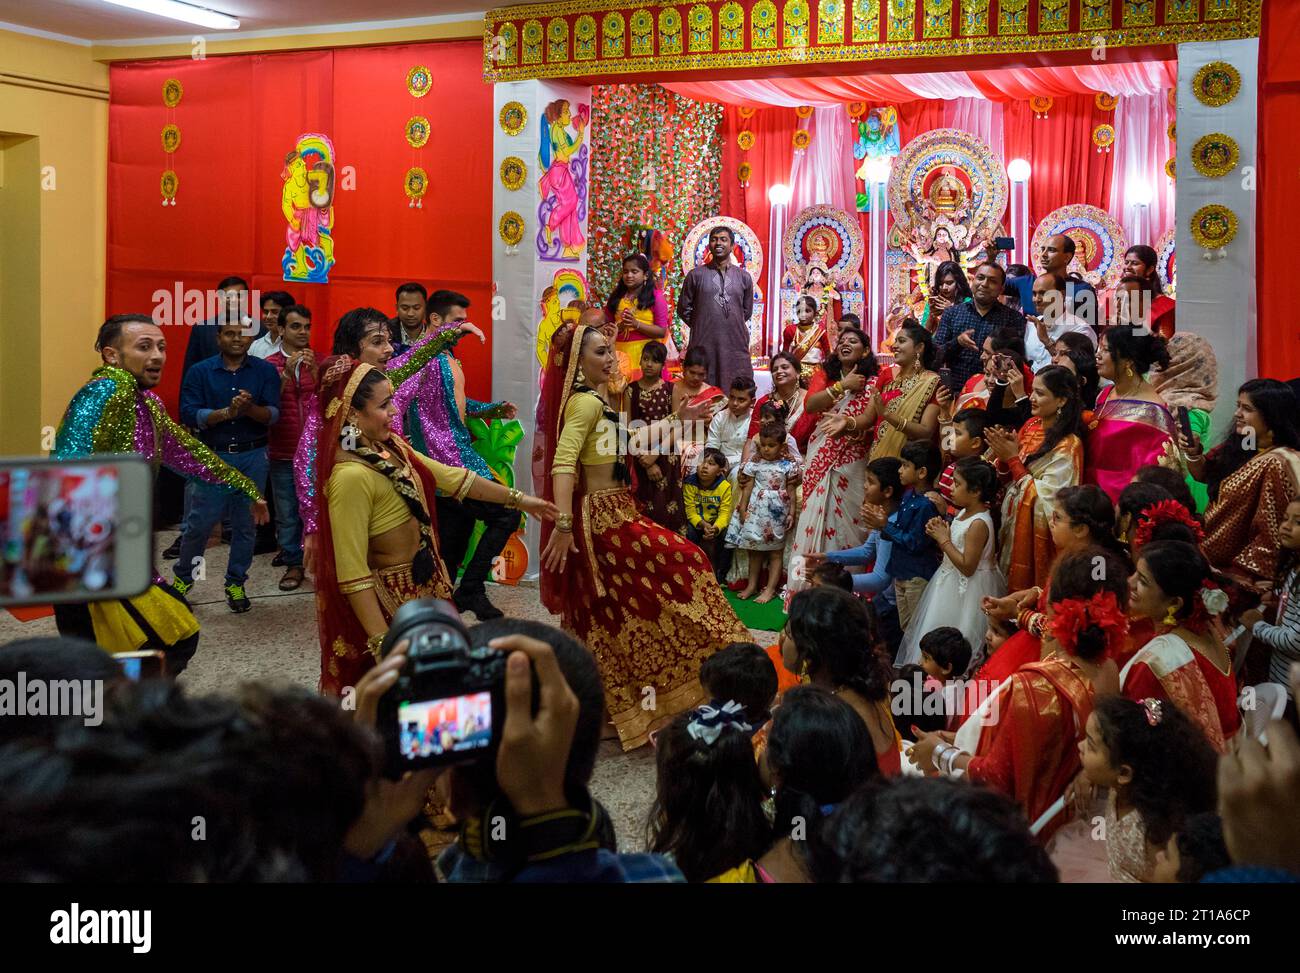 Rom, Torpignattara: Feier des indischen Feiertags von Durga Puja im römischen Viertel Tor Pignattara. Eine Gruppe von Tänzern tanzt, um Durga zu feiern Stockfoto